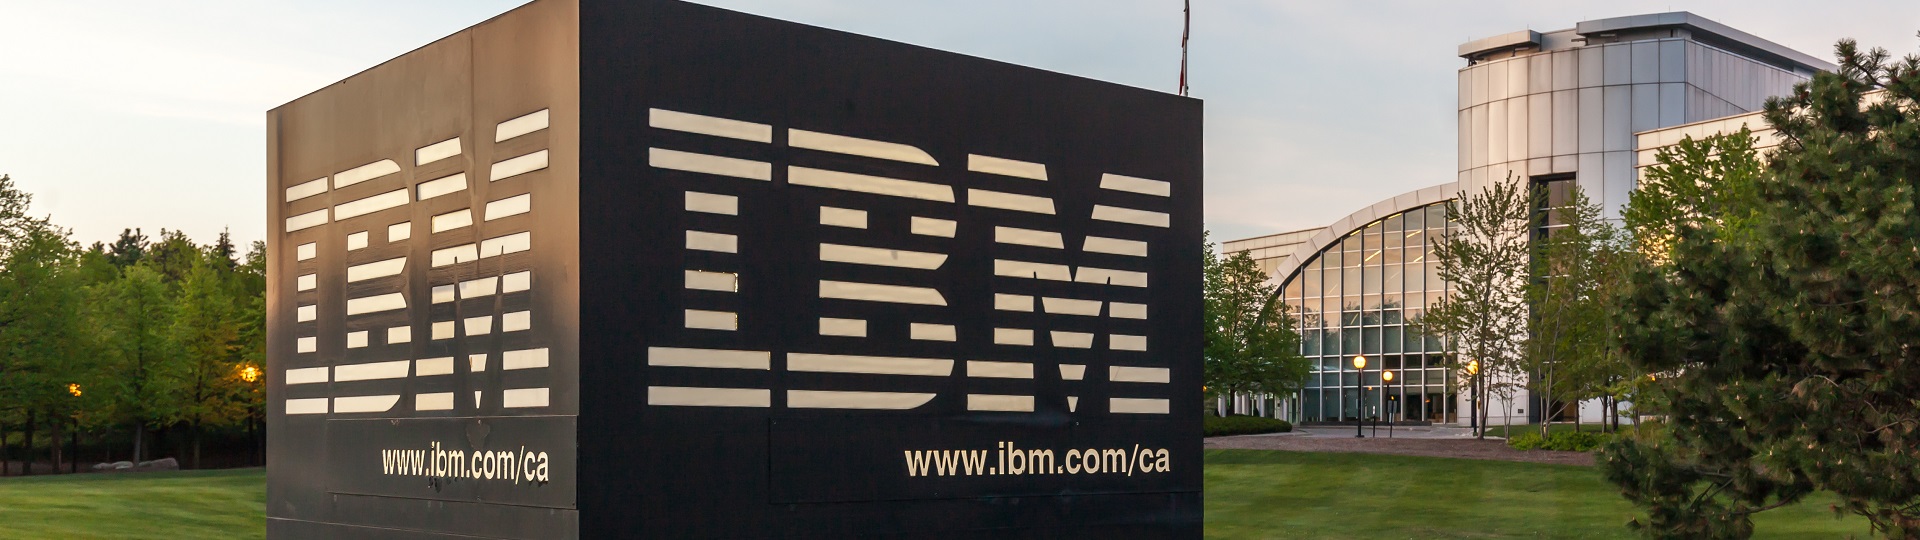 Fénix vstal z popela. Podaří se to i akciím IBM?